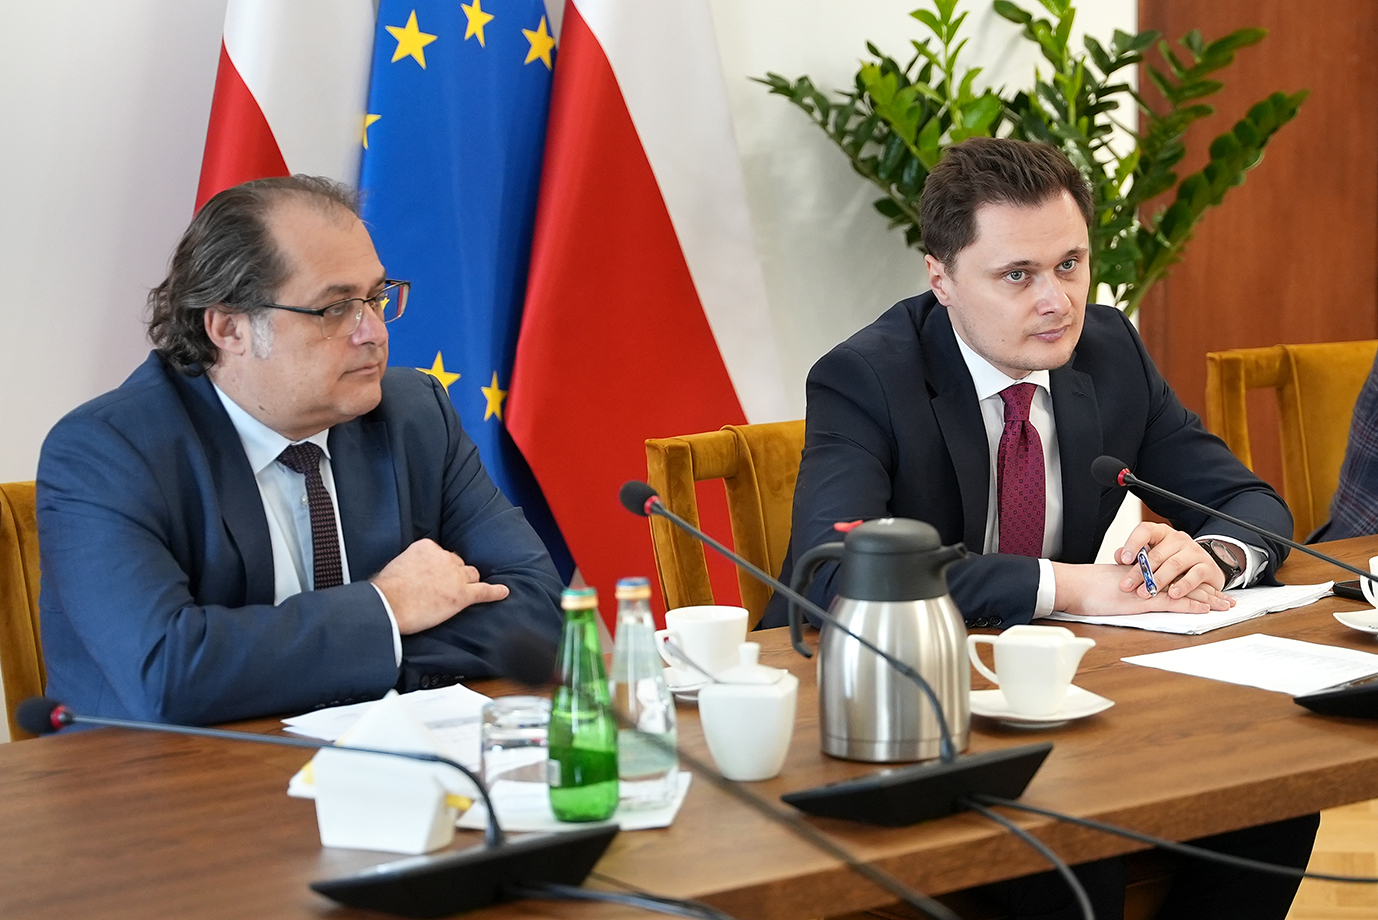 Podsekretarz stanu Krzysztof Cieciura oraz sekretarz stanu w MI Marek Gróbarczyk (fot. MRiRW)